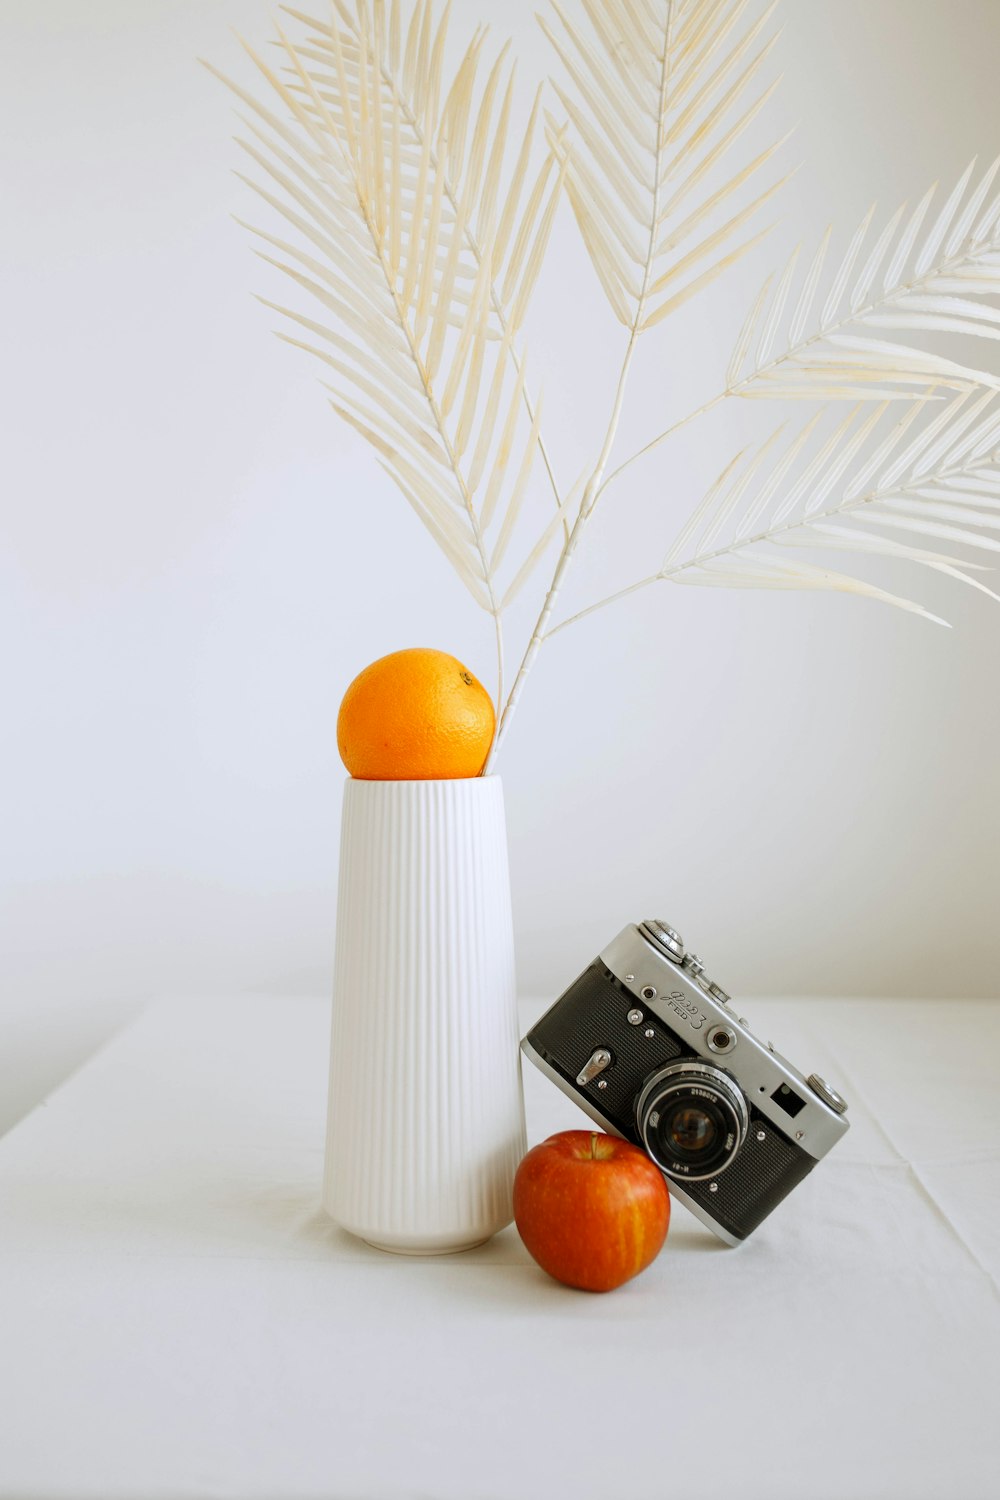 white and black camera beside orange fruit